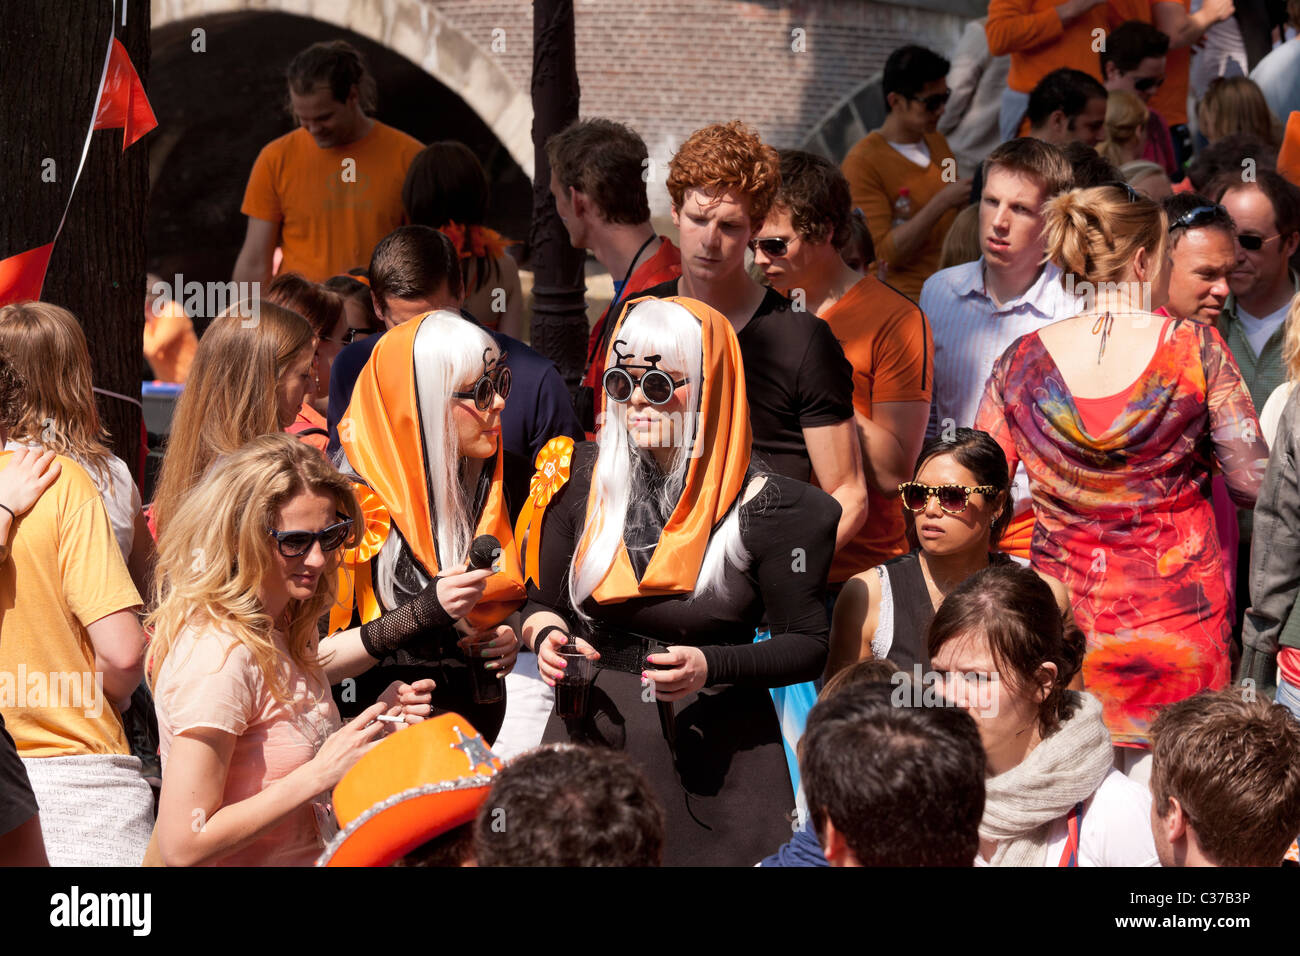 Zwei Lady Gaga Look-a-Likes am Königstag, der Geburtstag des Königs in Amsterdam. Lustige Hüte und Brillen und viel orange Gewand. Stockfoto